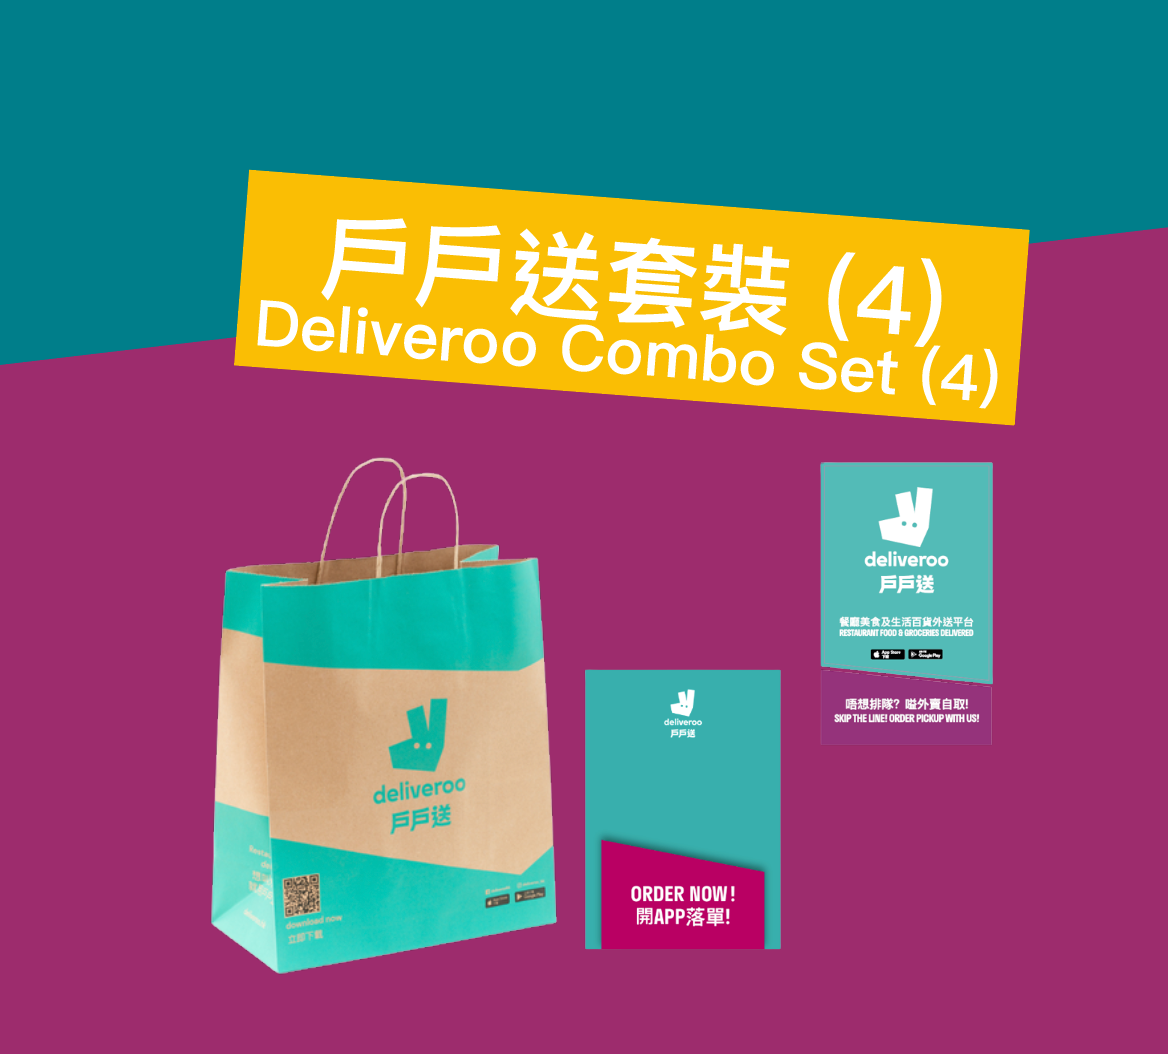 戶戶送套裝 (4) Deliveroo Combo Set (4)